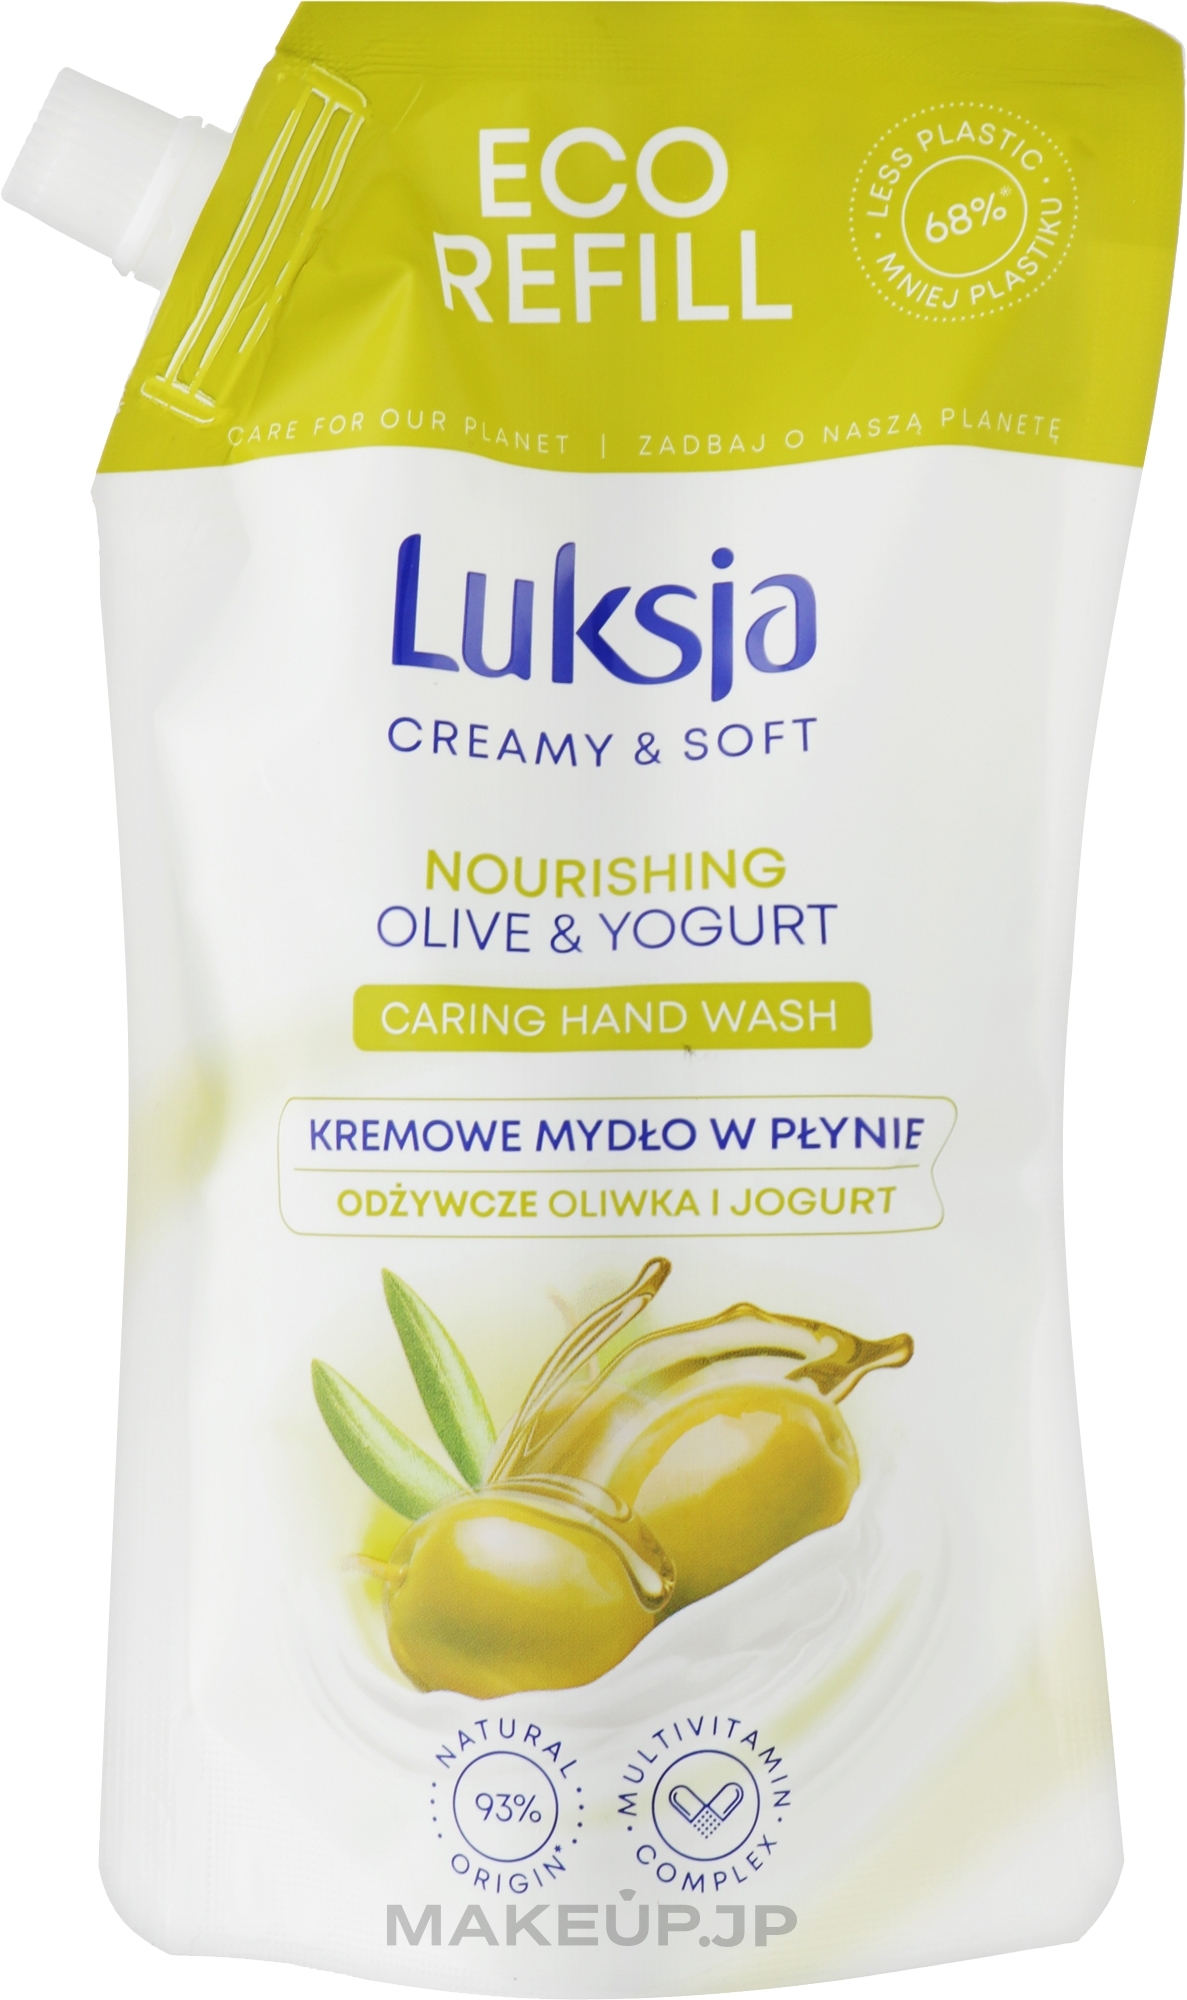 Olive & Yogurt Hand Wash - Luksja Creamy & Soft Olive & Yogurt Caring Hand Wash (doy-pack)  — photo 400 ml